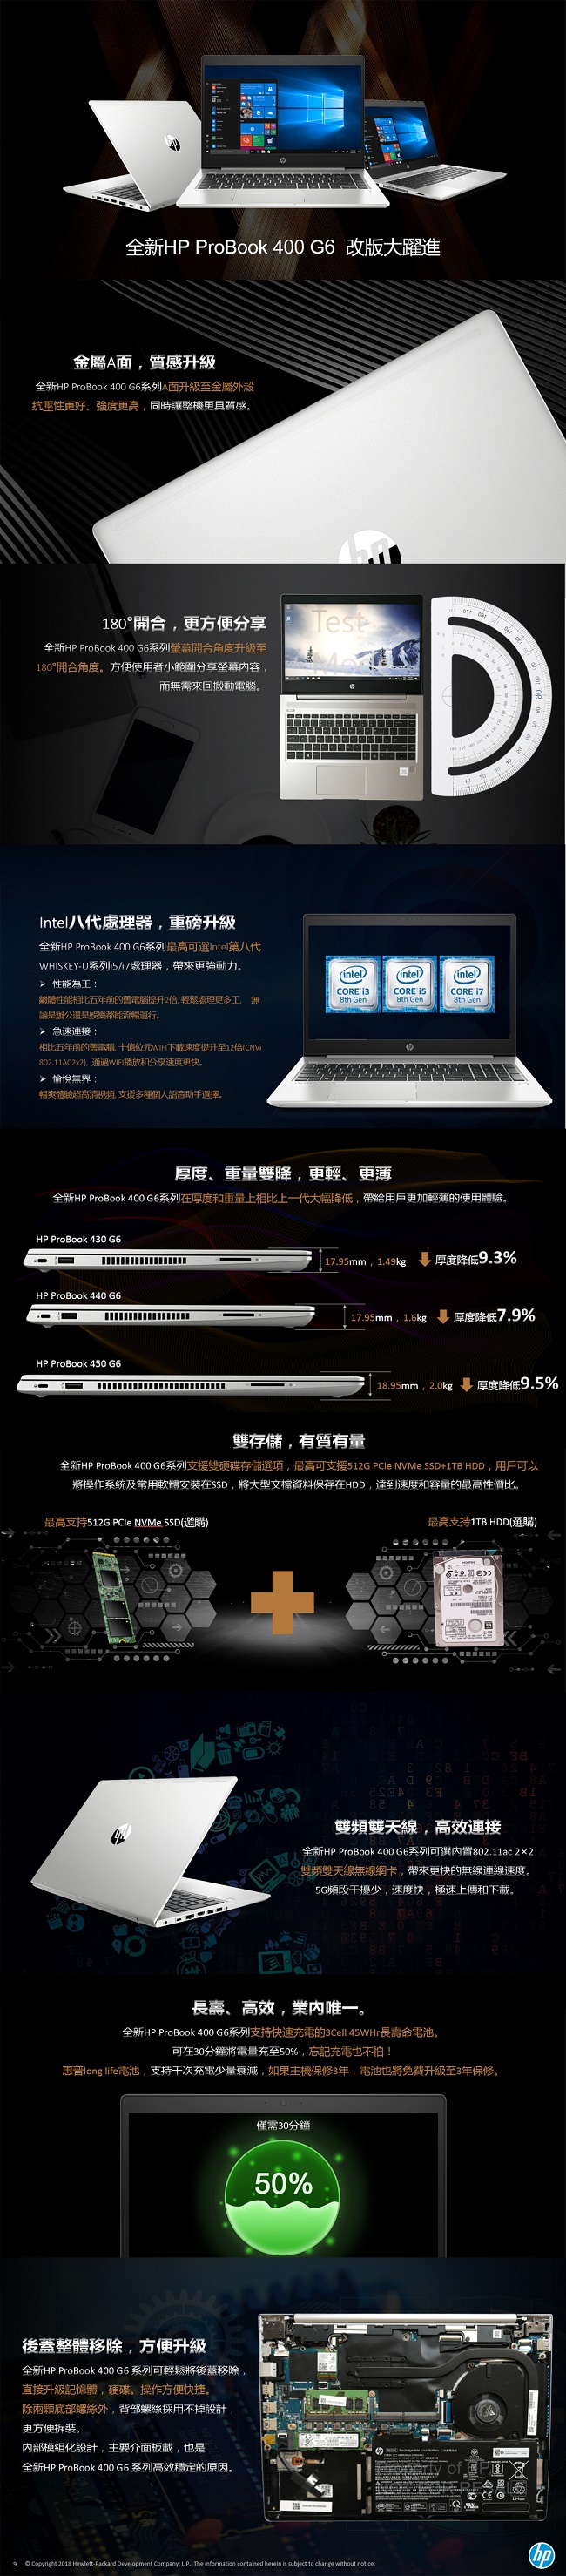 HP ProBook 430G6 Intel® i5 13.3吋商用筆電(單碟版)